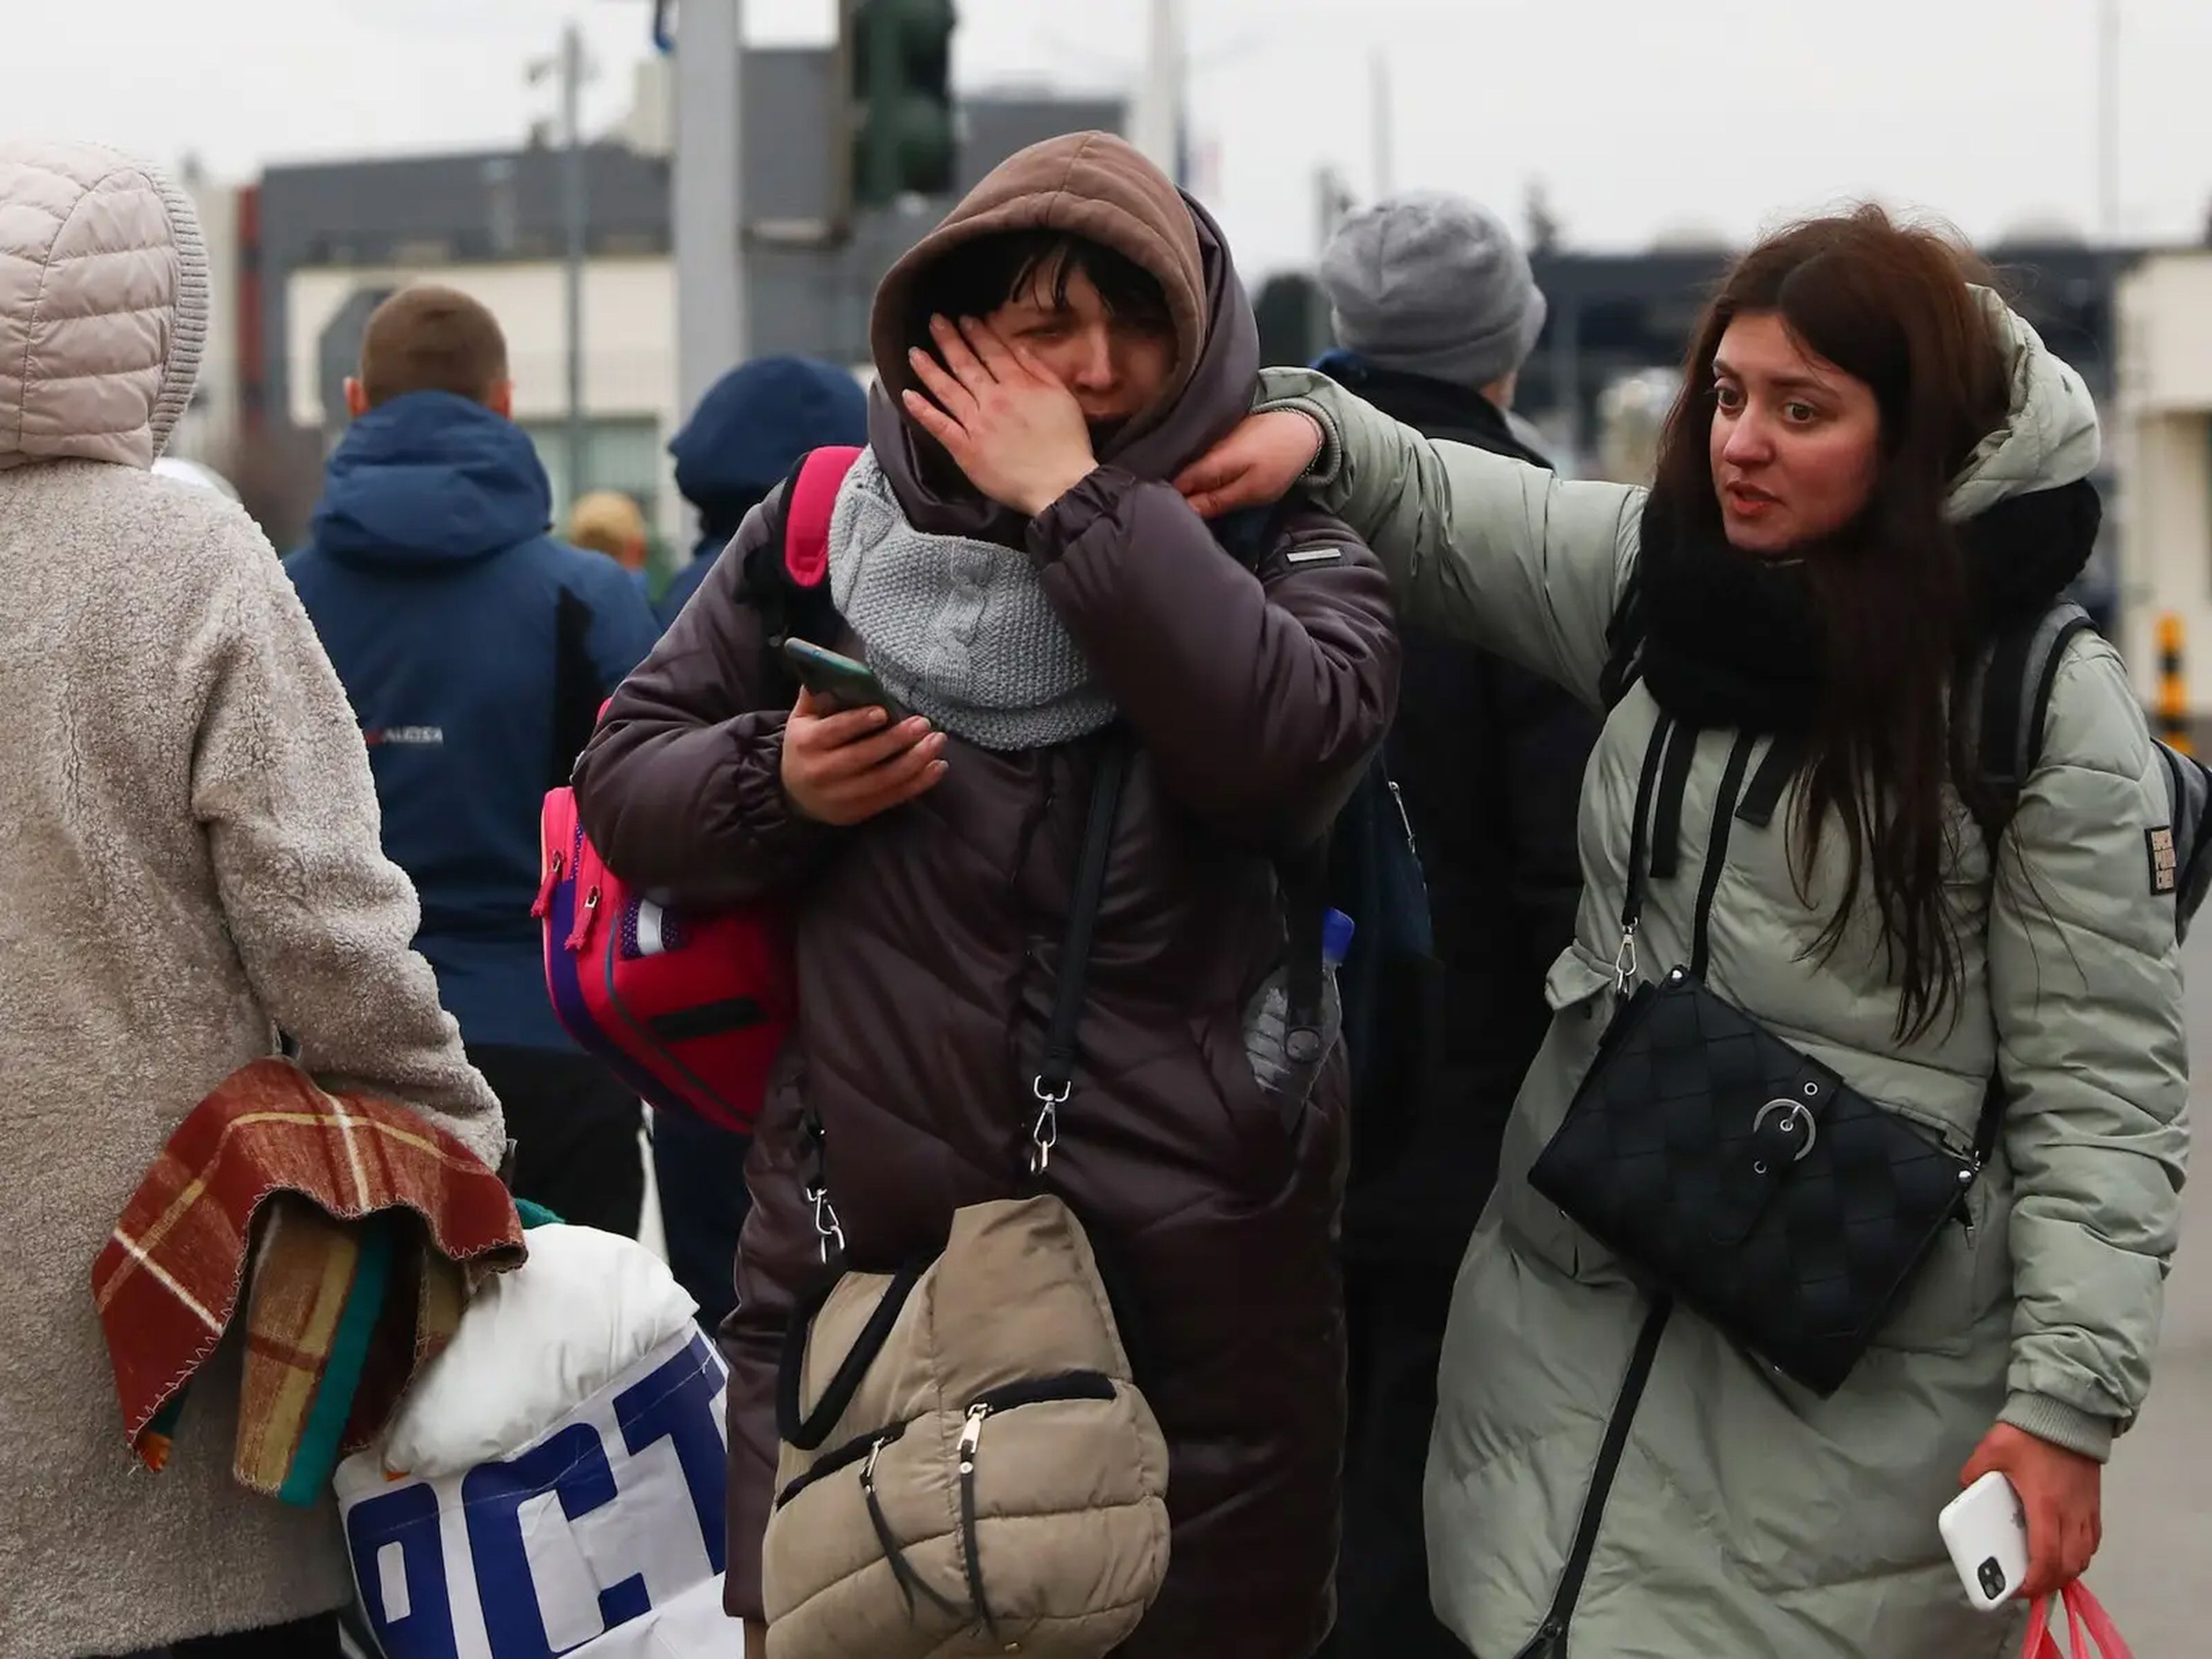 Refugiados huyendo de Ucrania tras cruzar la frontera con Polonia debido a la guerra provocada por Rusia.